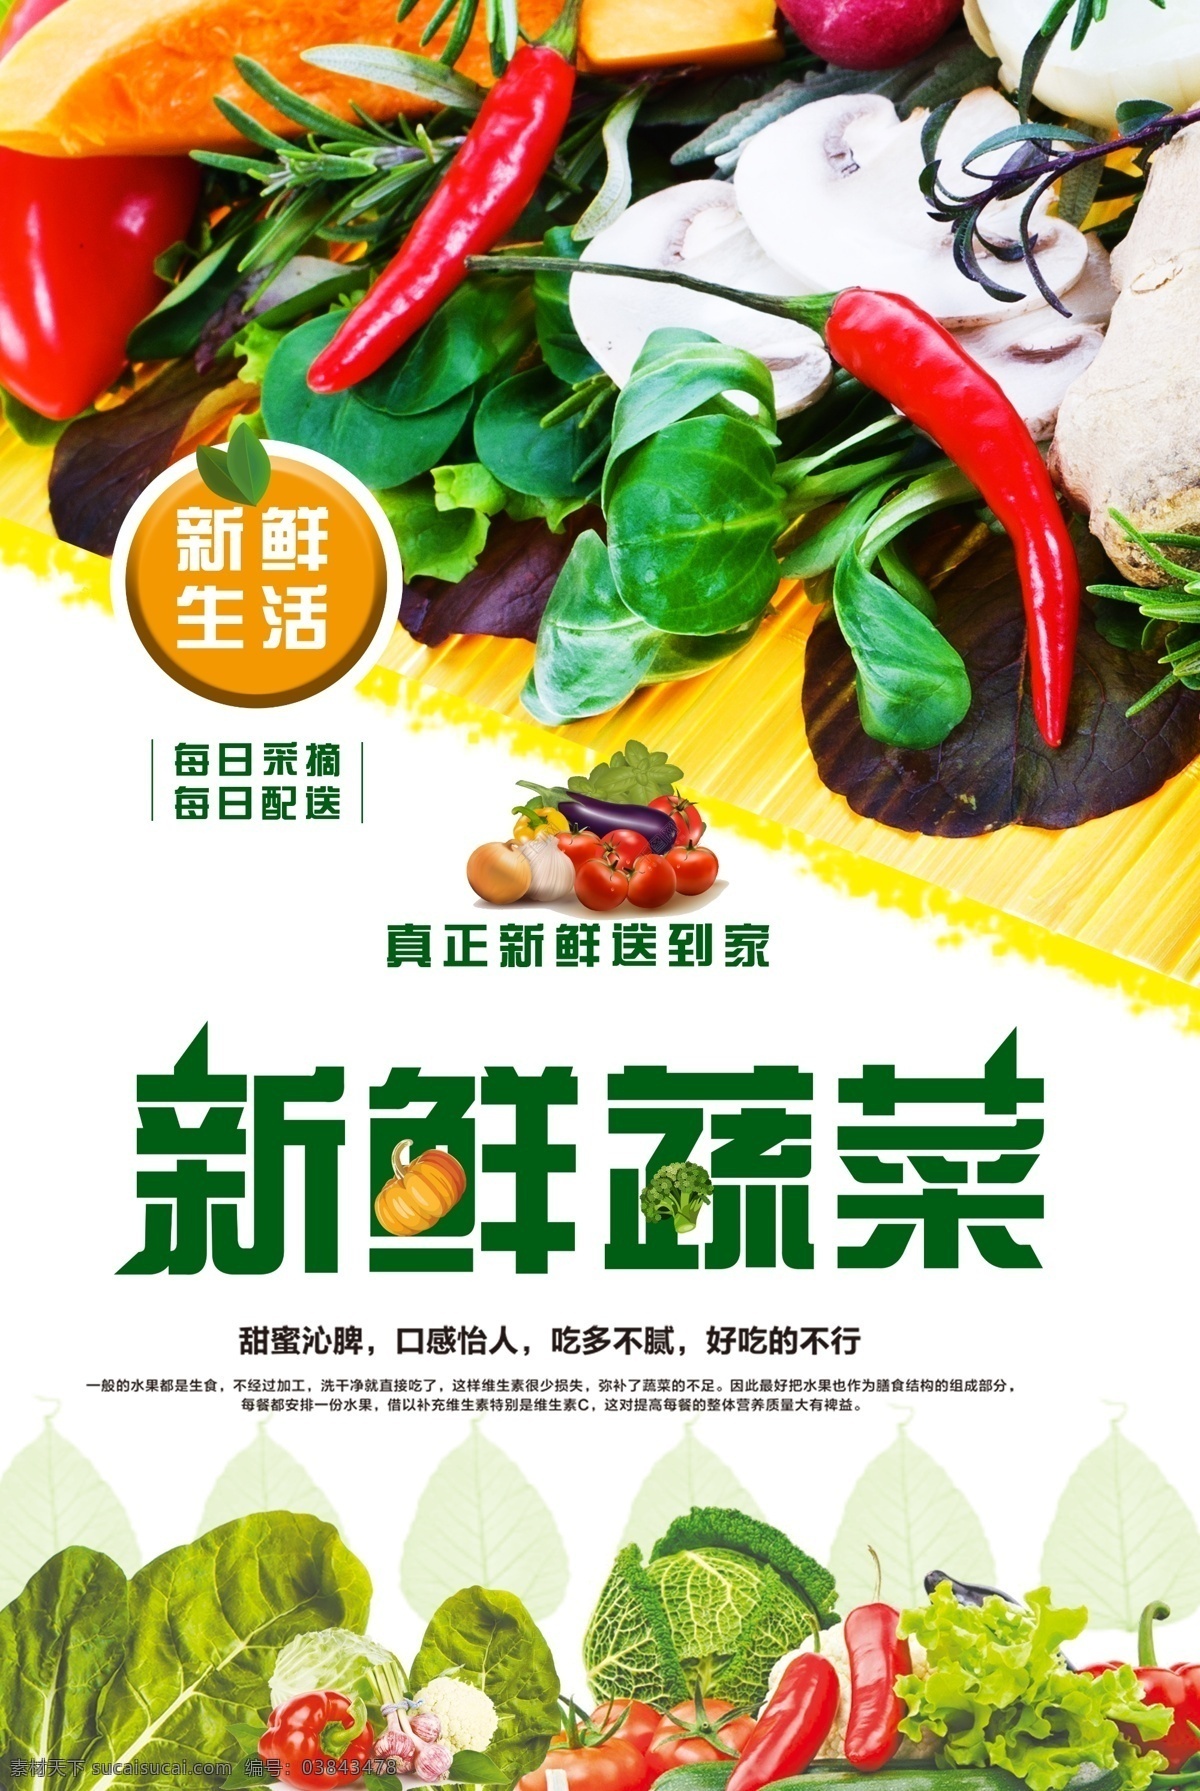 创意 蔬菜 促销 海报 促销活动 宣传 宣传单 页 活动 蔬菜单页设计 有机 海报模版 psd蔬菜 蔬菜psd